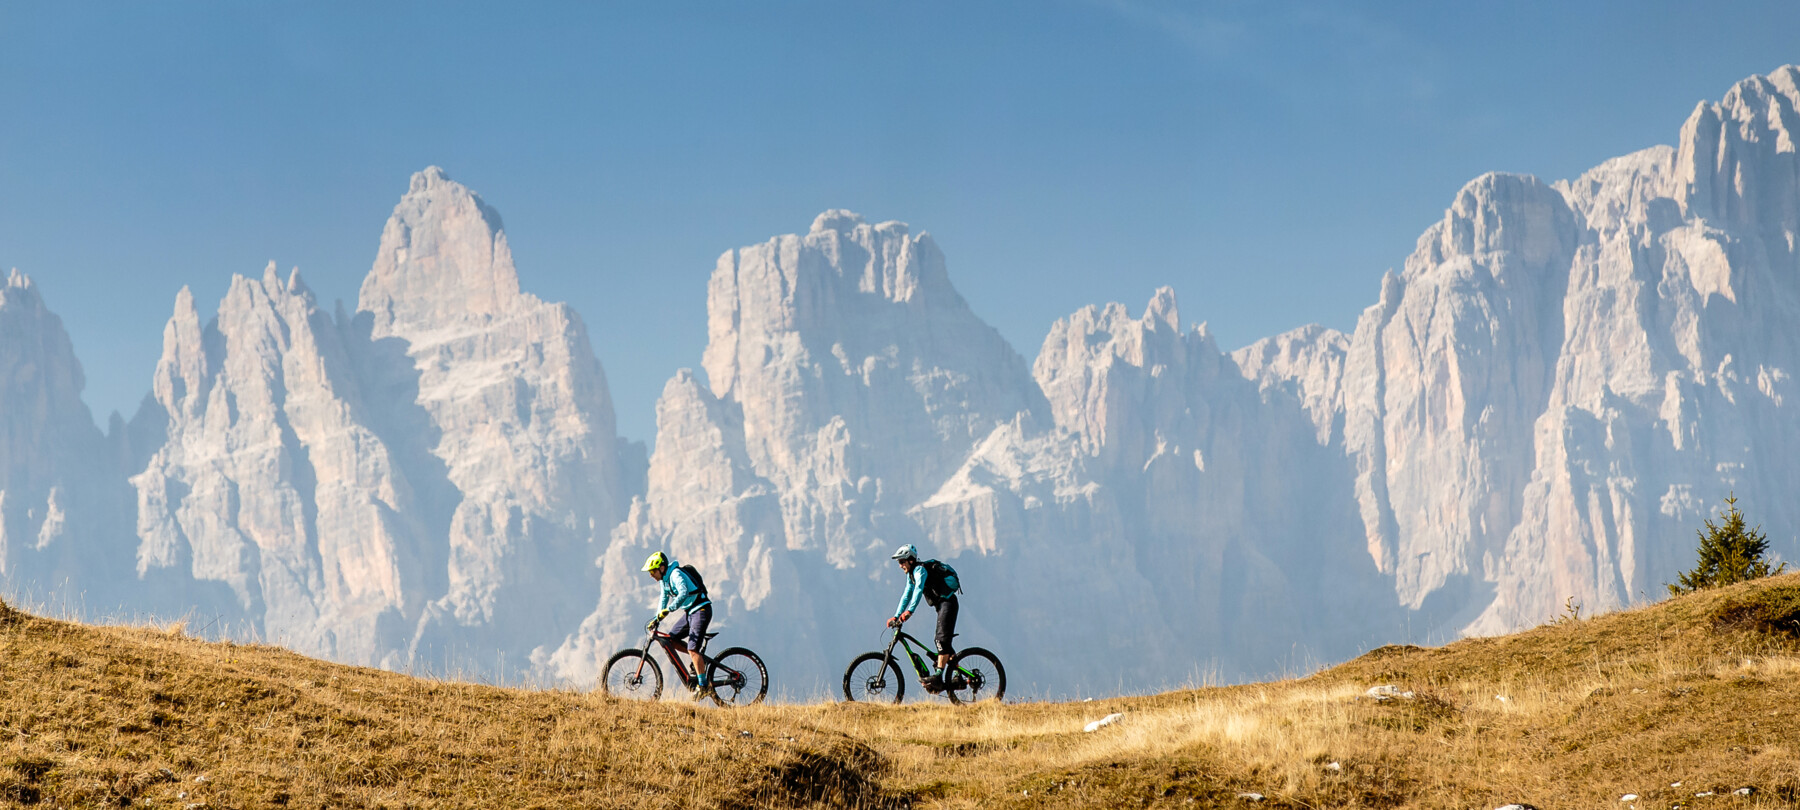 Dolomiten und Abenteuer: mit dem Mountainbike auf der Paganella-Hochebene